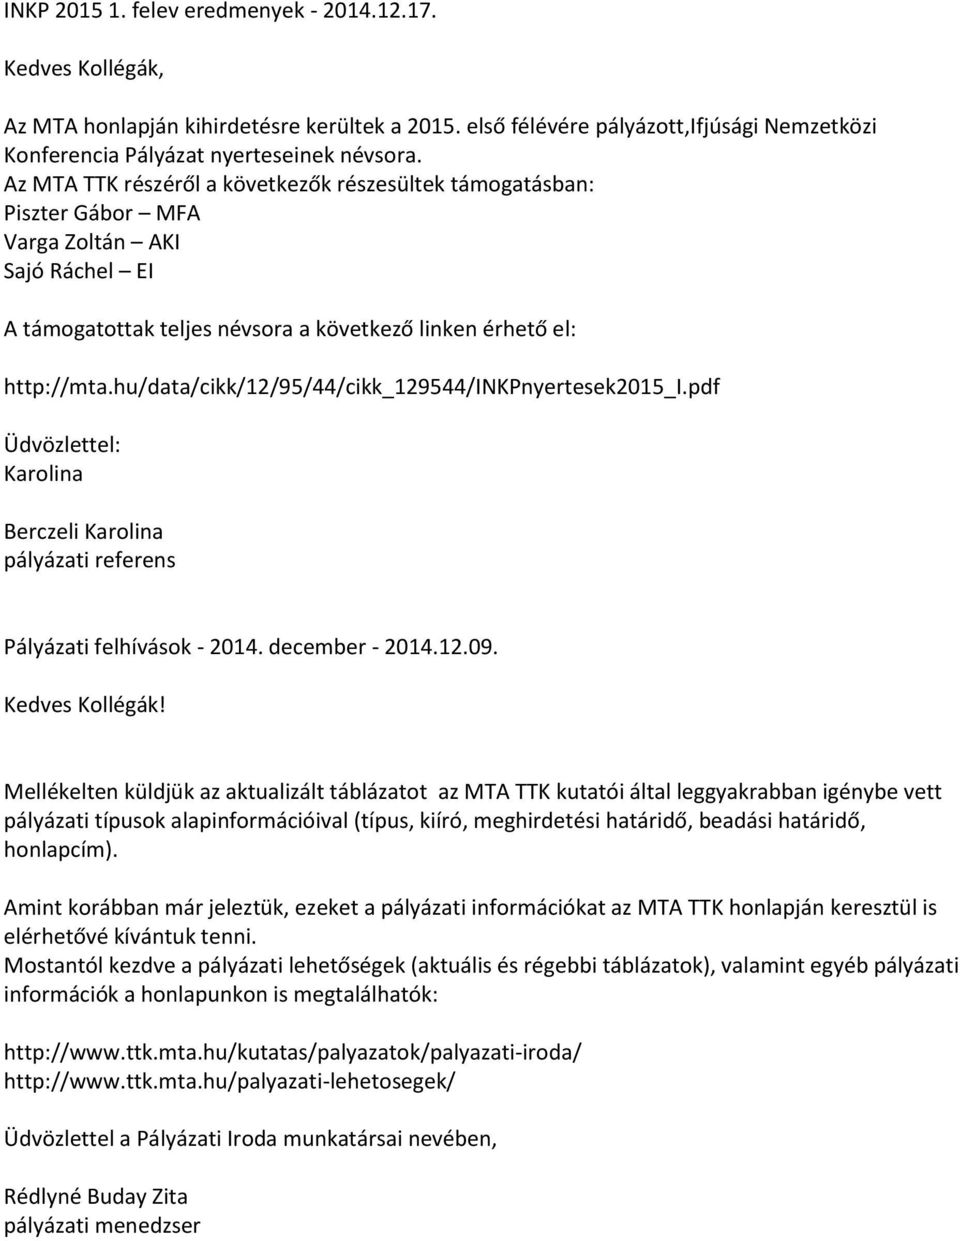 hu/data/cikk/12/95/44/cikk_129544/inkpnyertesek2015_i.pdf Karolina Pályázati felhívások - 2014. december - 2014.12.09.